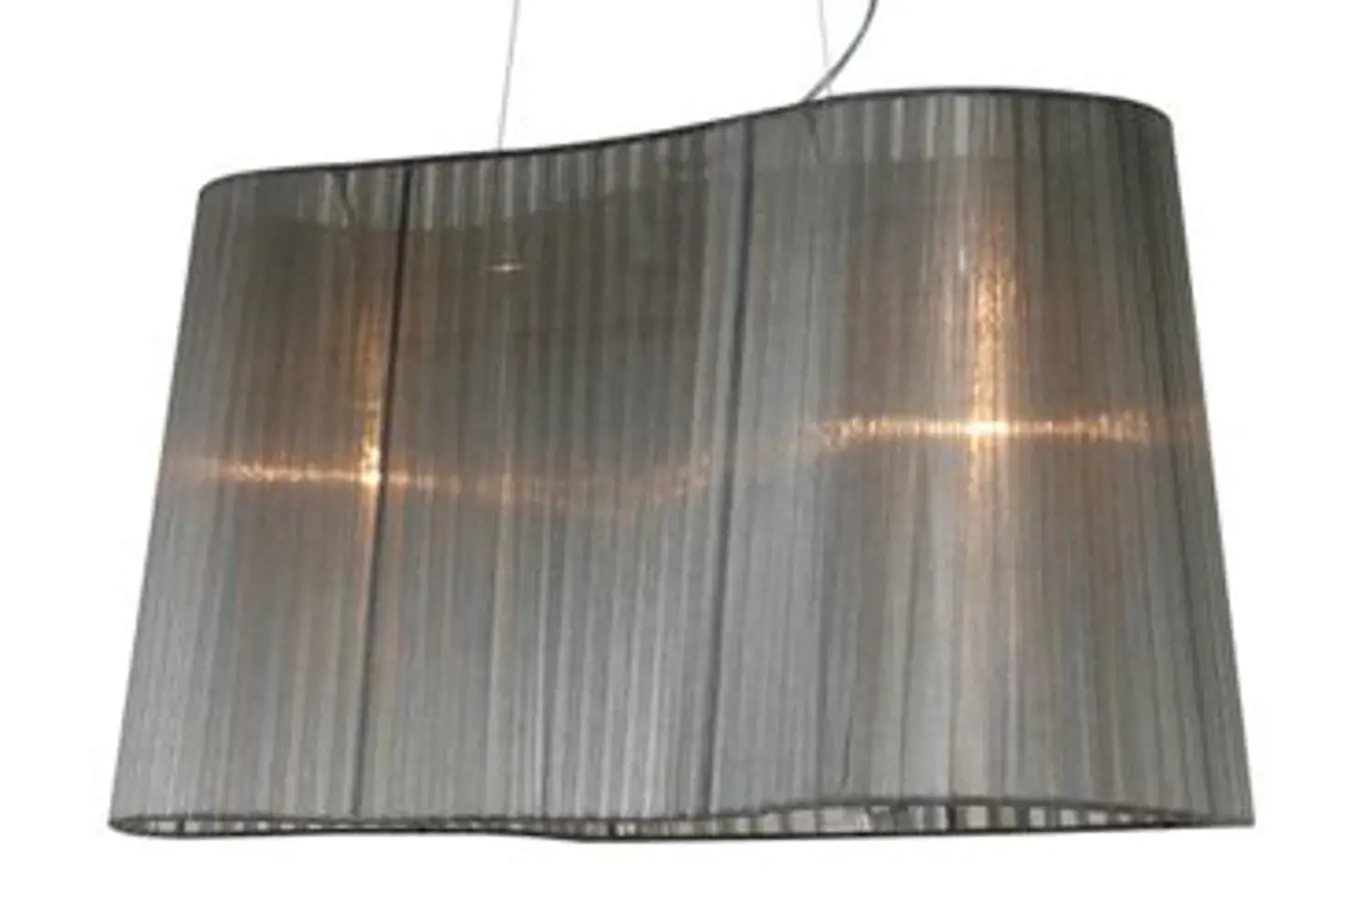 K luxusní tapetě s metalickými efekty se ideálně hodí svítidlo Domo II s textilním širmem od Rendl Light Studia (cena 4800 Kč)